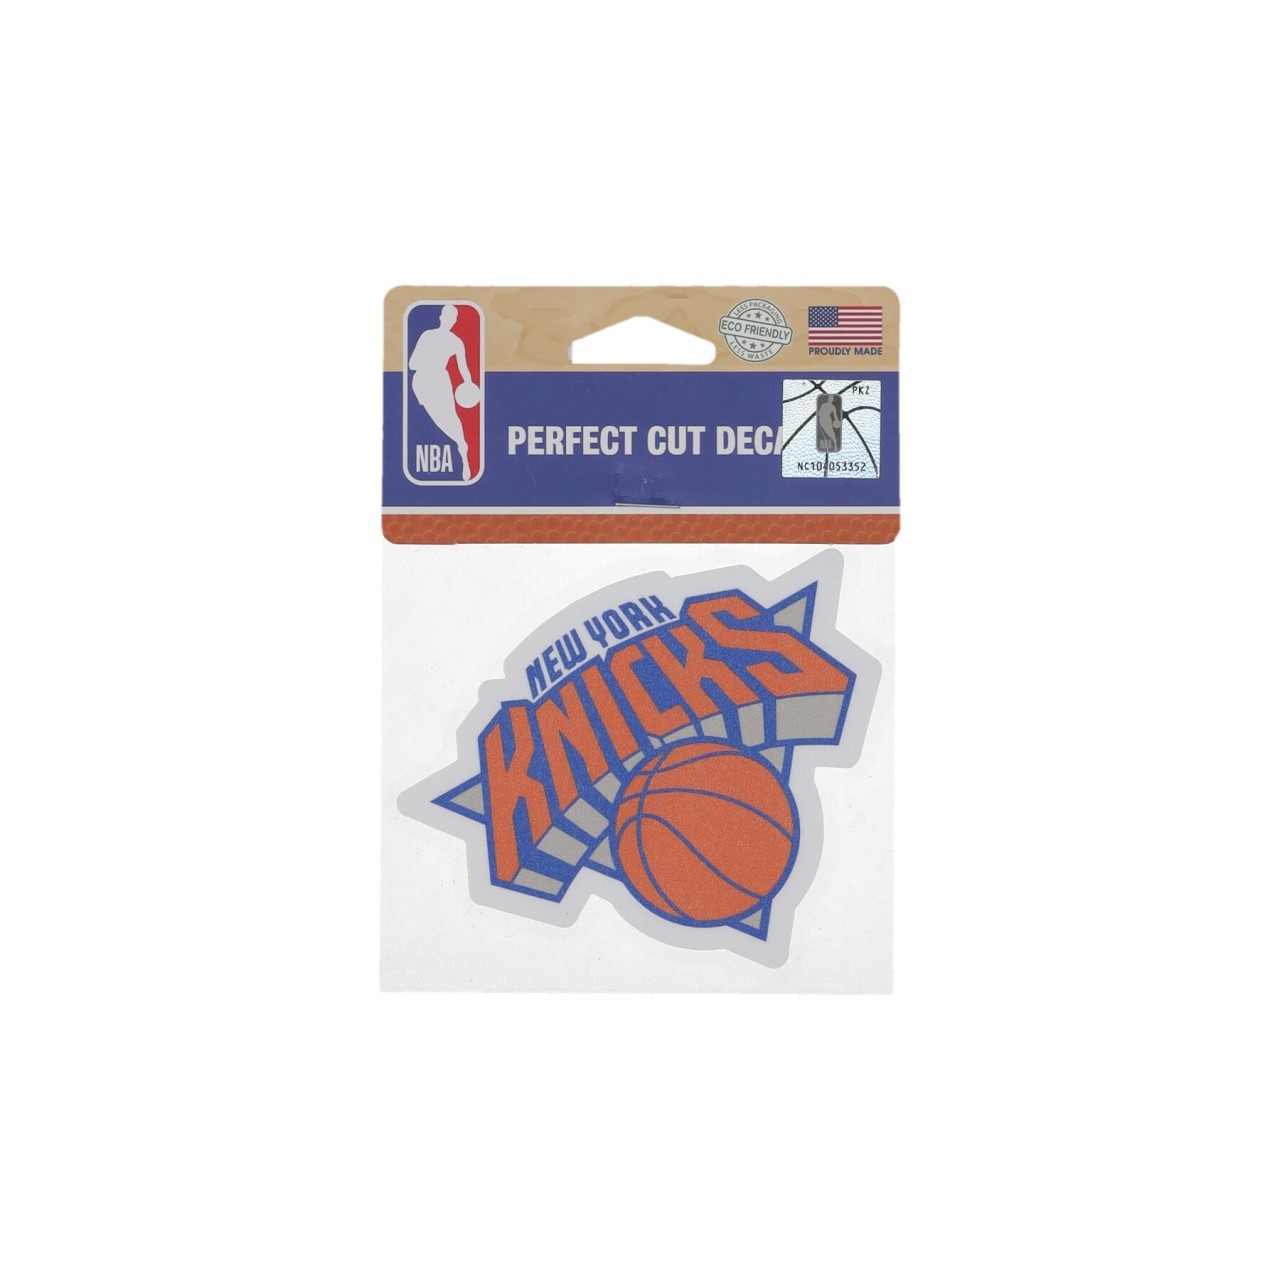 WINCRAFT NBA 4 x 4” PERFECT CUT DECAL NEYKNI 21754011